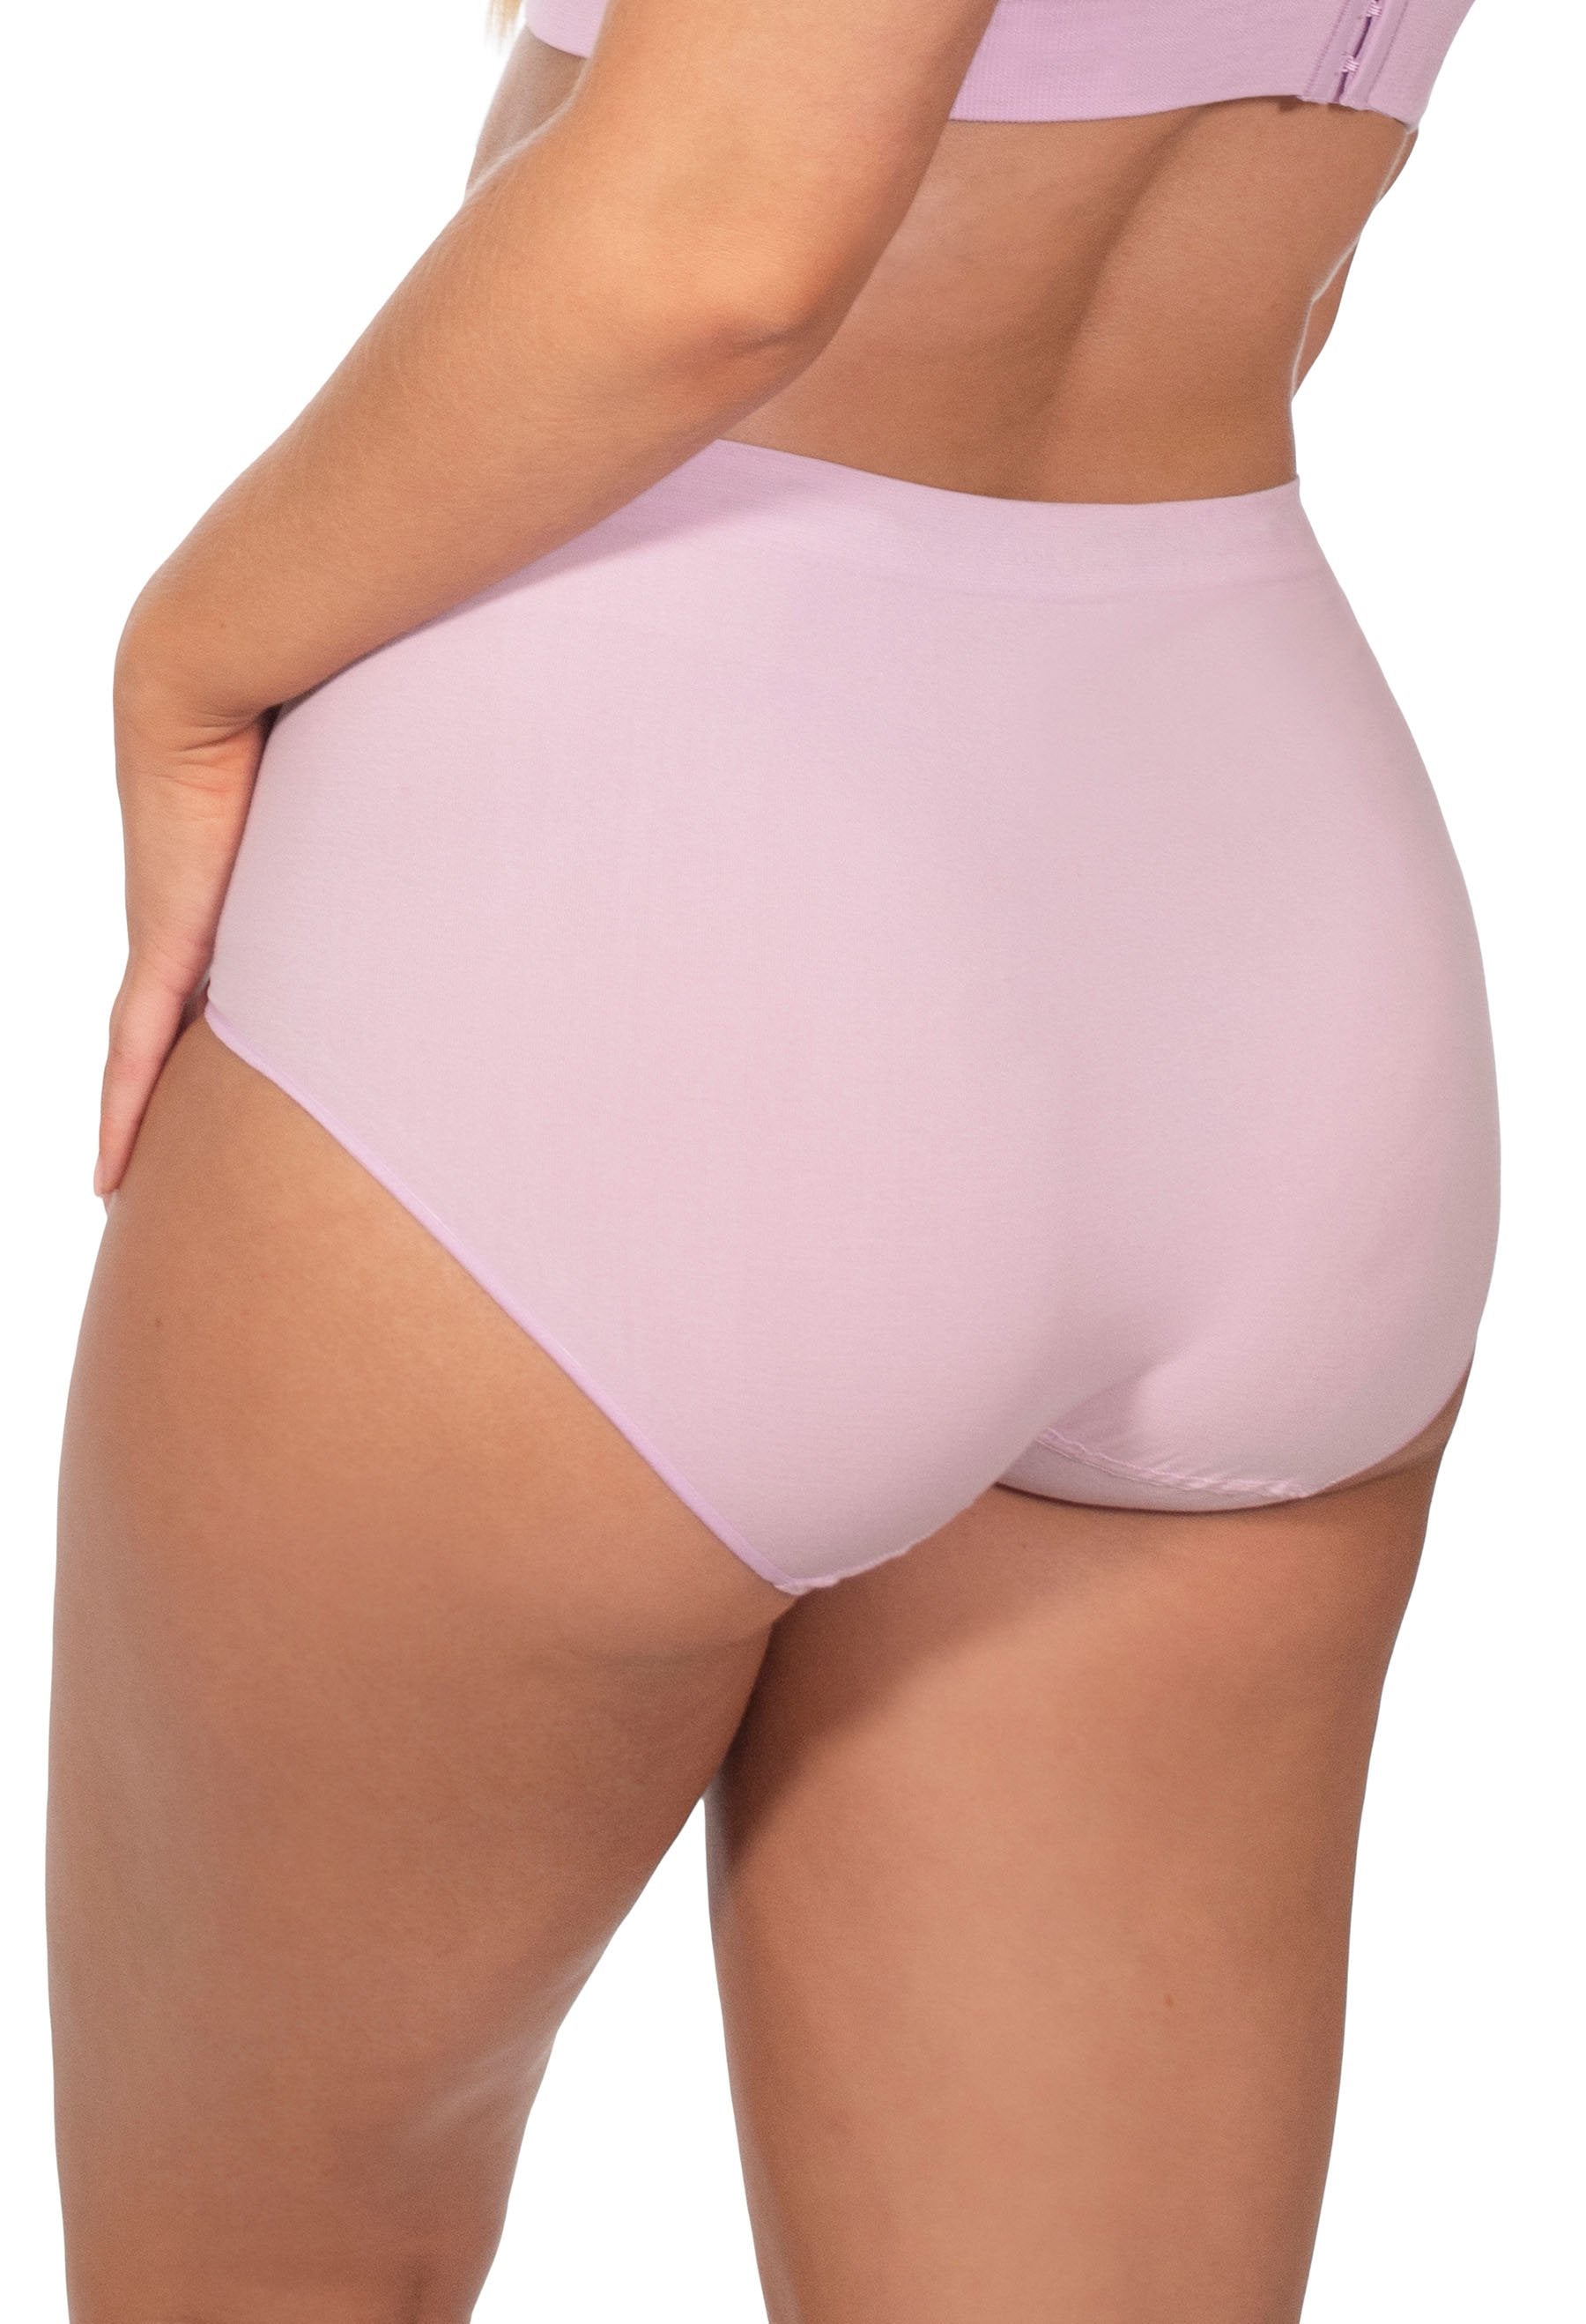 Womens Underwear High Waist Cotton Underwear Soft Underwear Super Stretchy  Briefs Full Coverage Panties Women